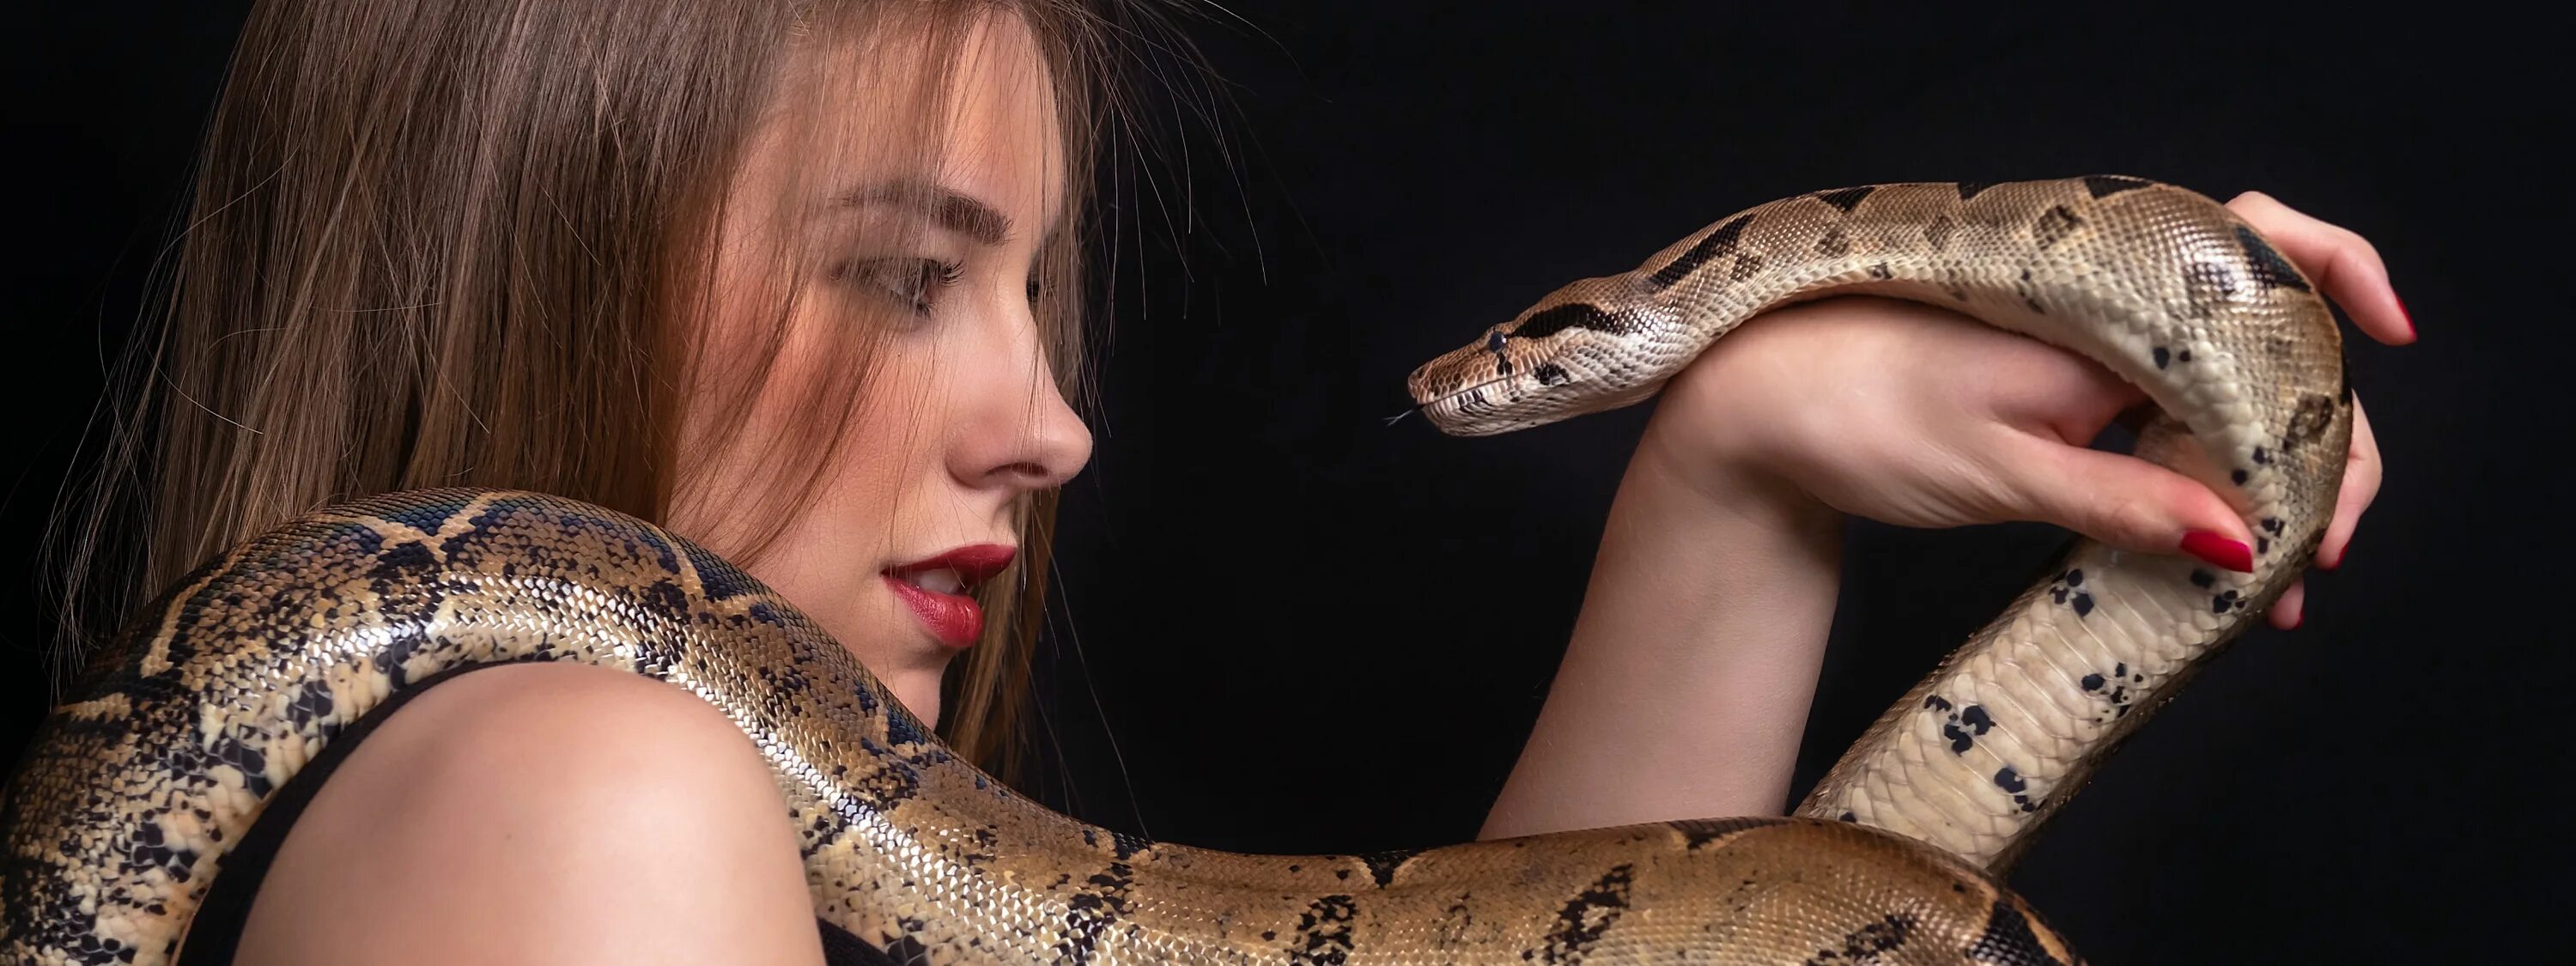 Женщина анаконда. Анаконда питон и женщина. Девушка змея. Фотосессия со змеями. Красивая девушка со змеей.